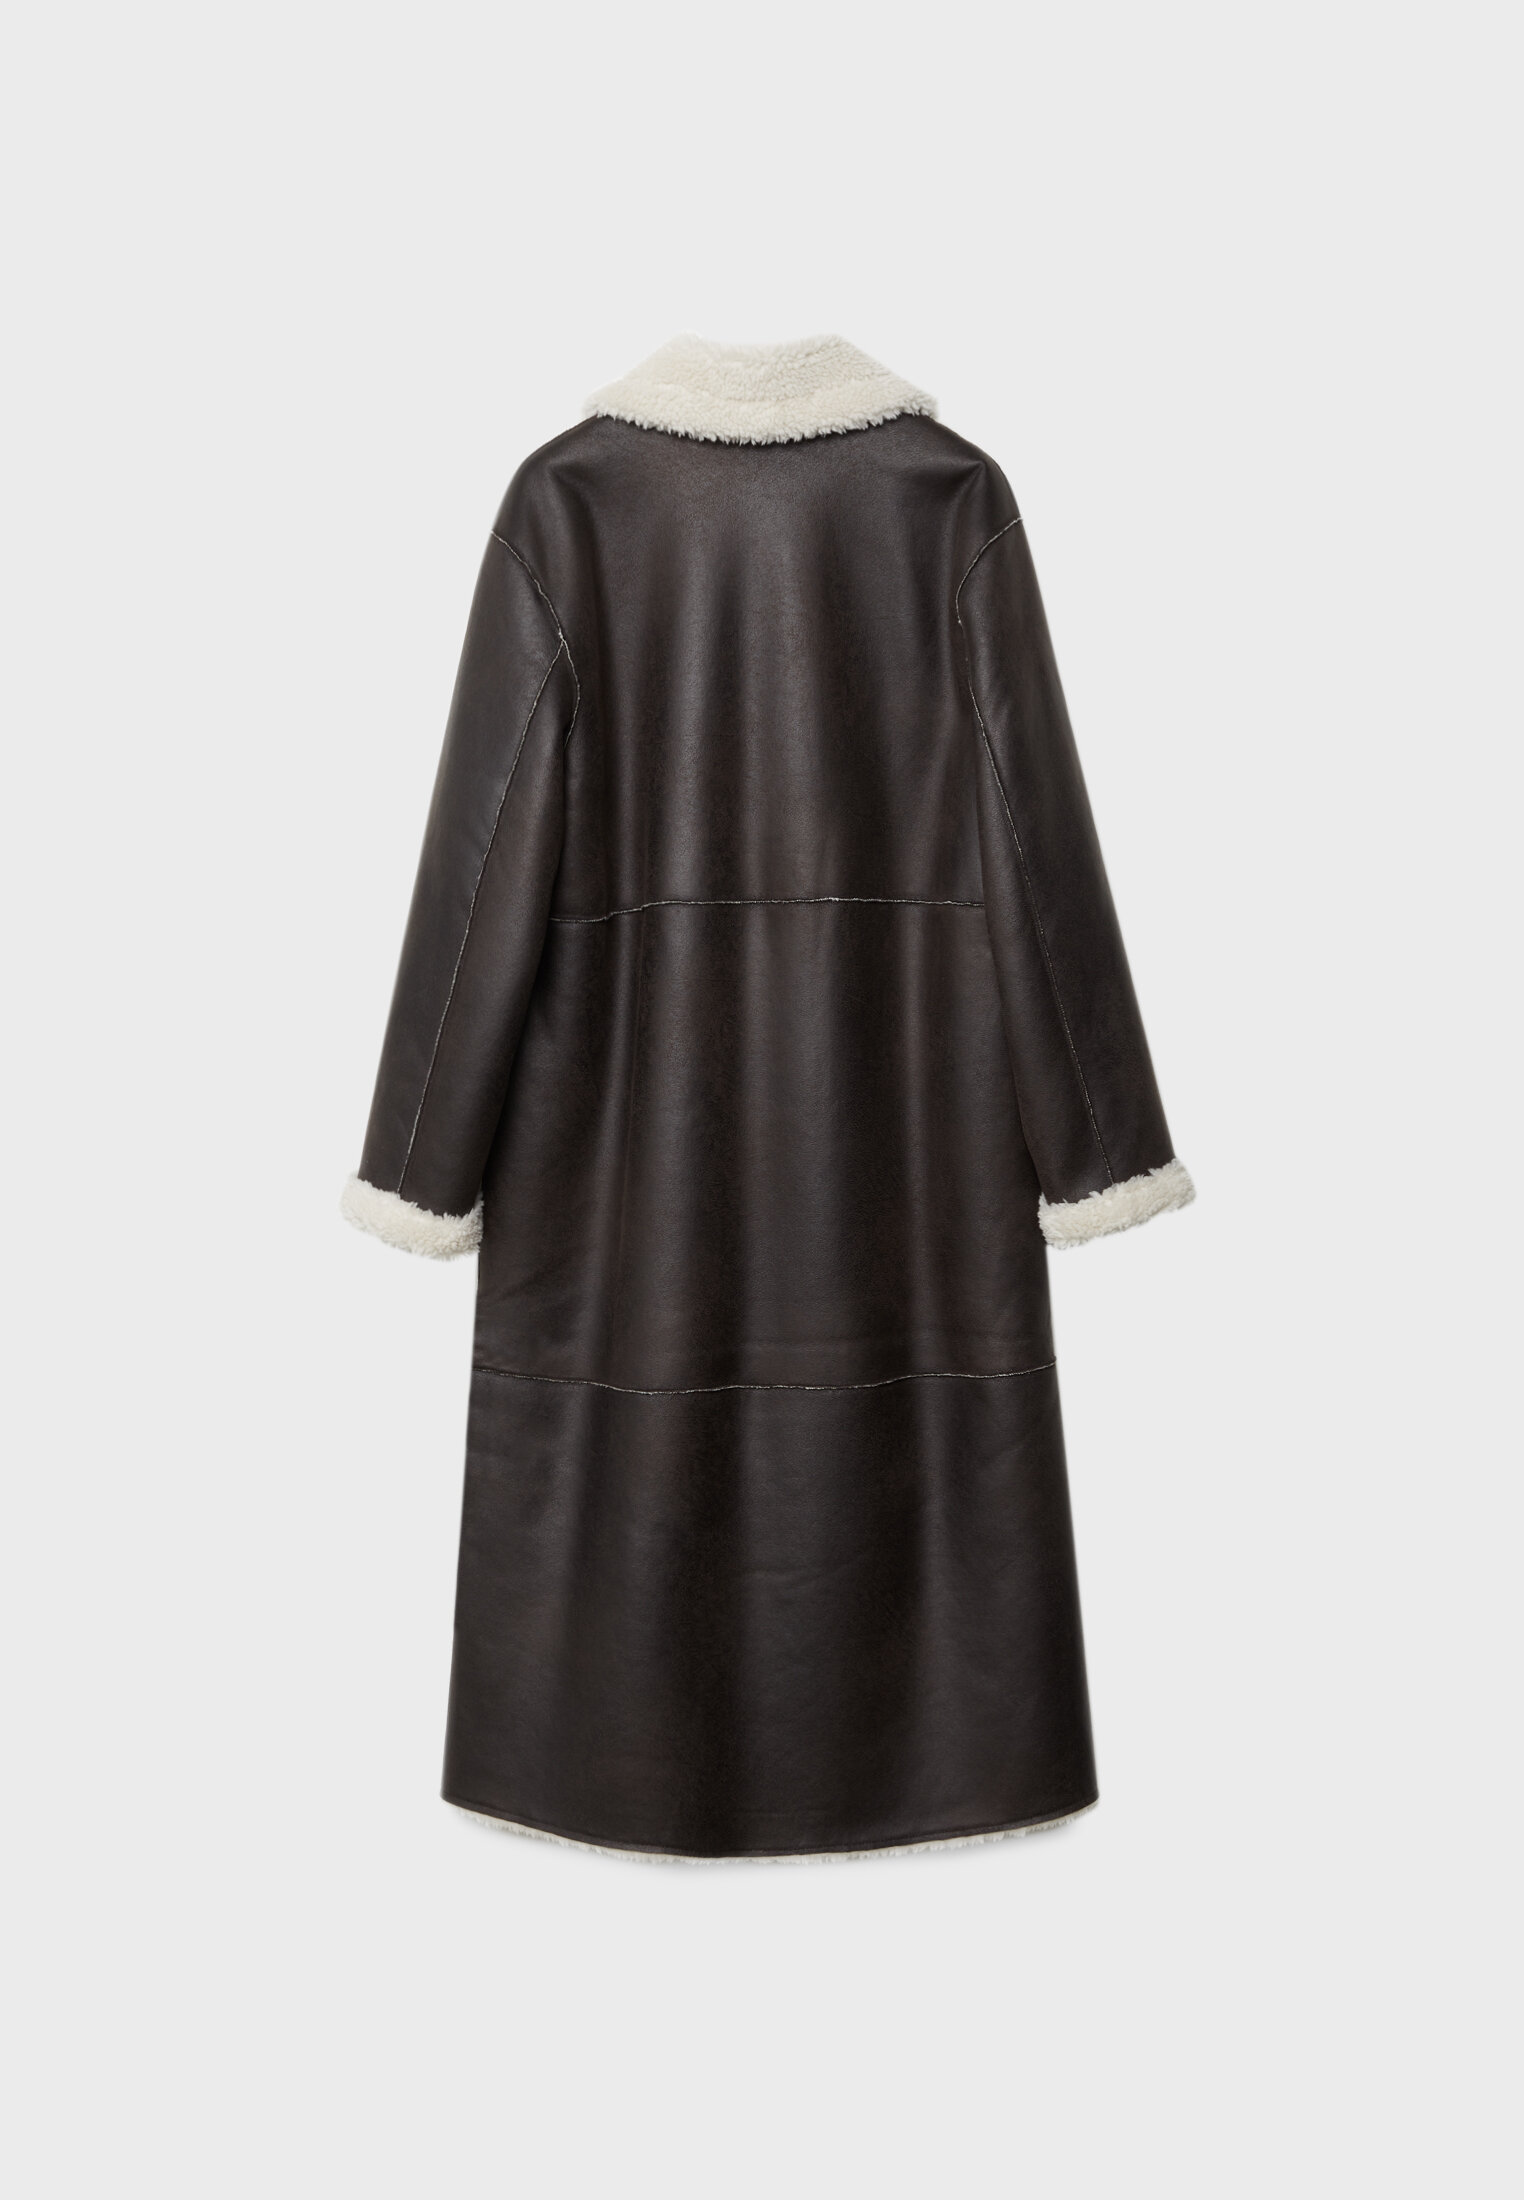 Long reversible faux shearling lined coat - Women's fashion